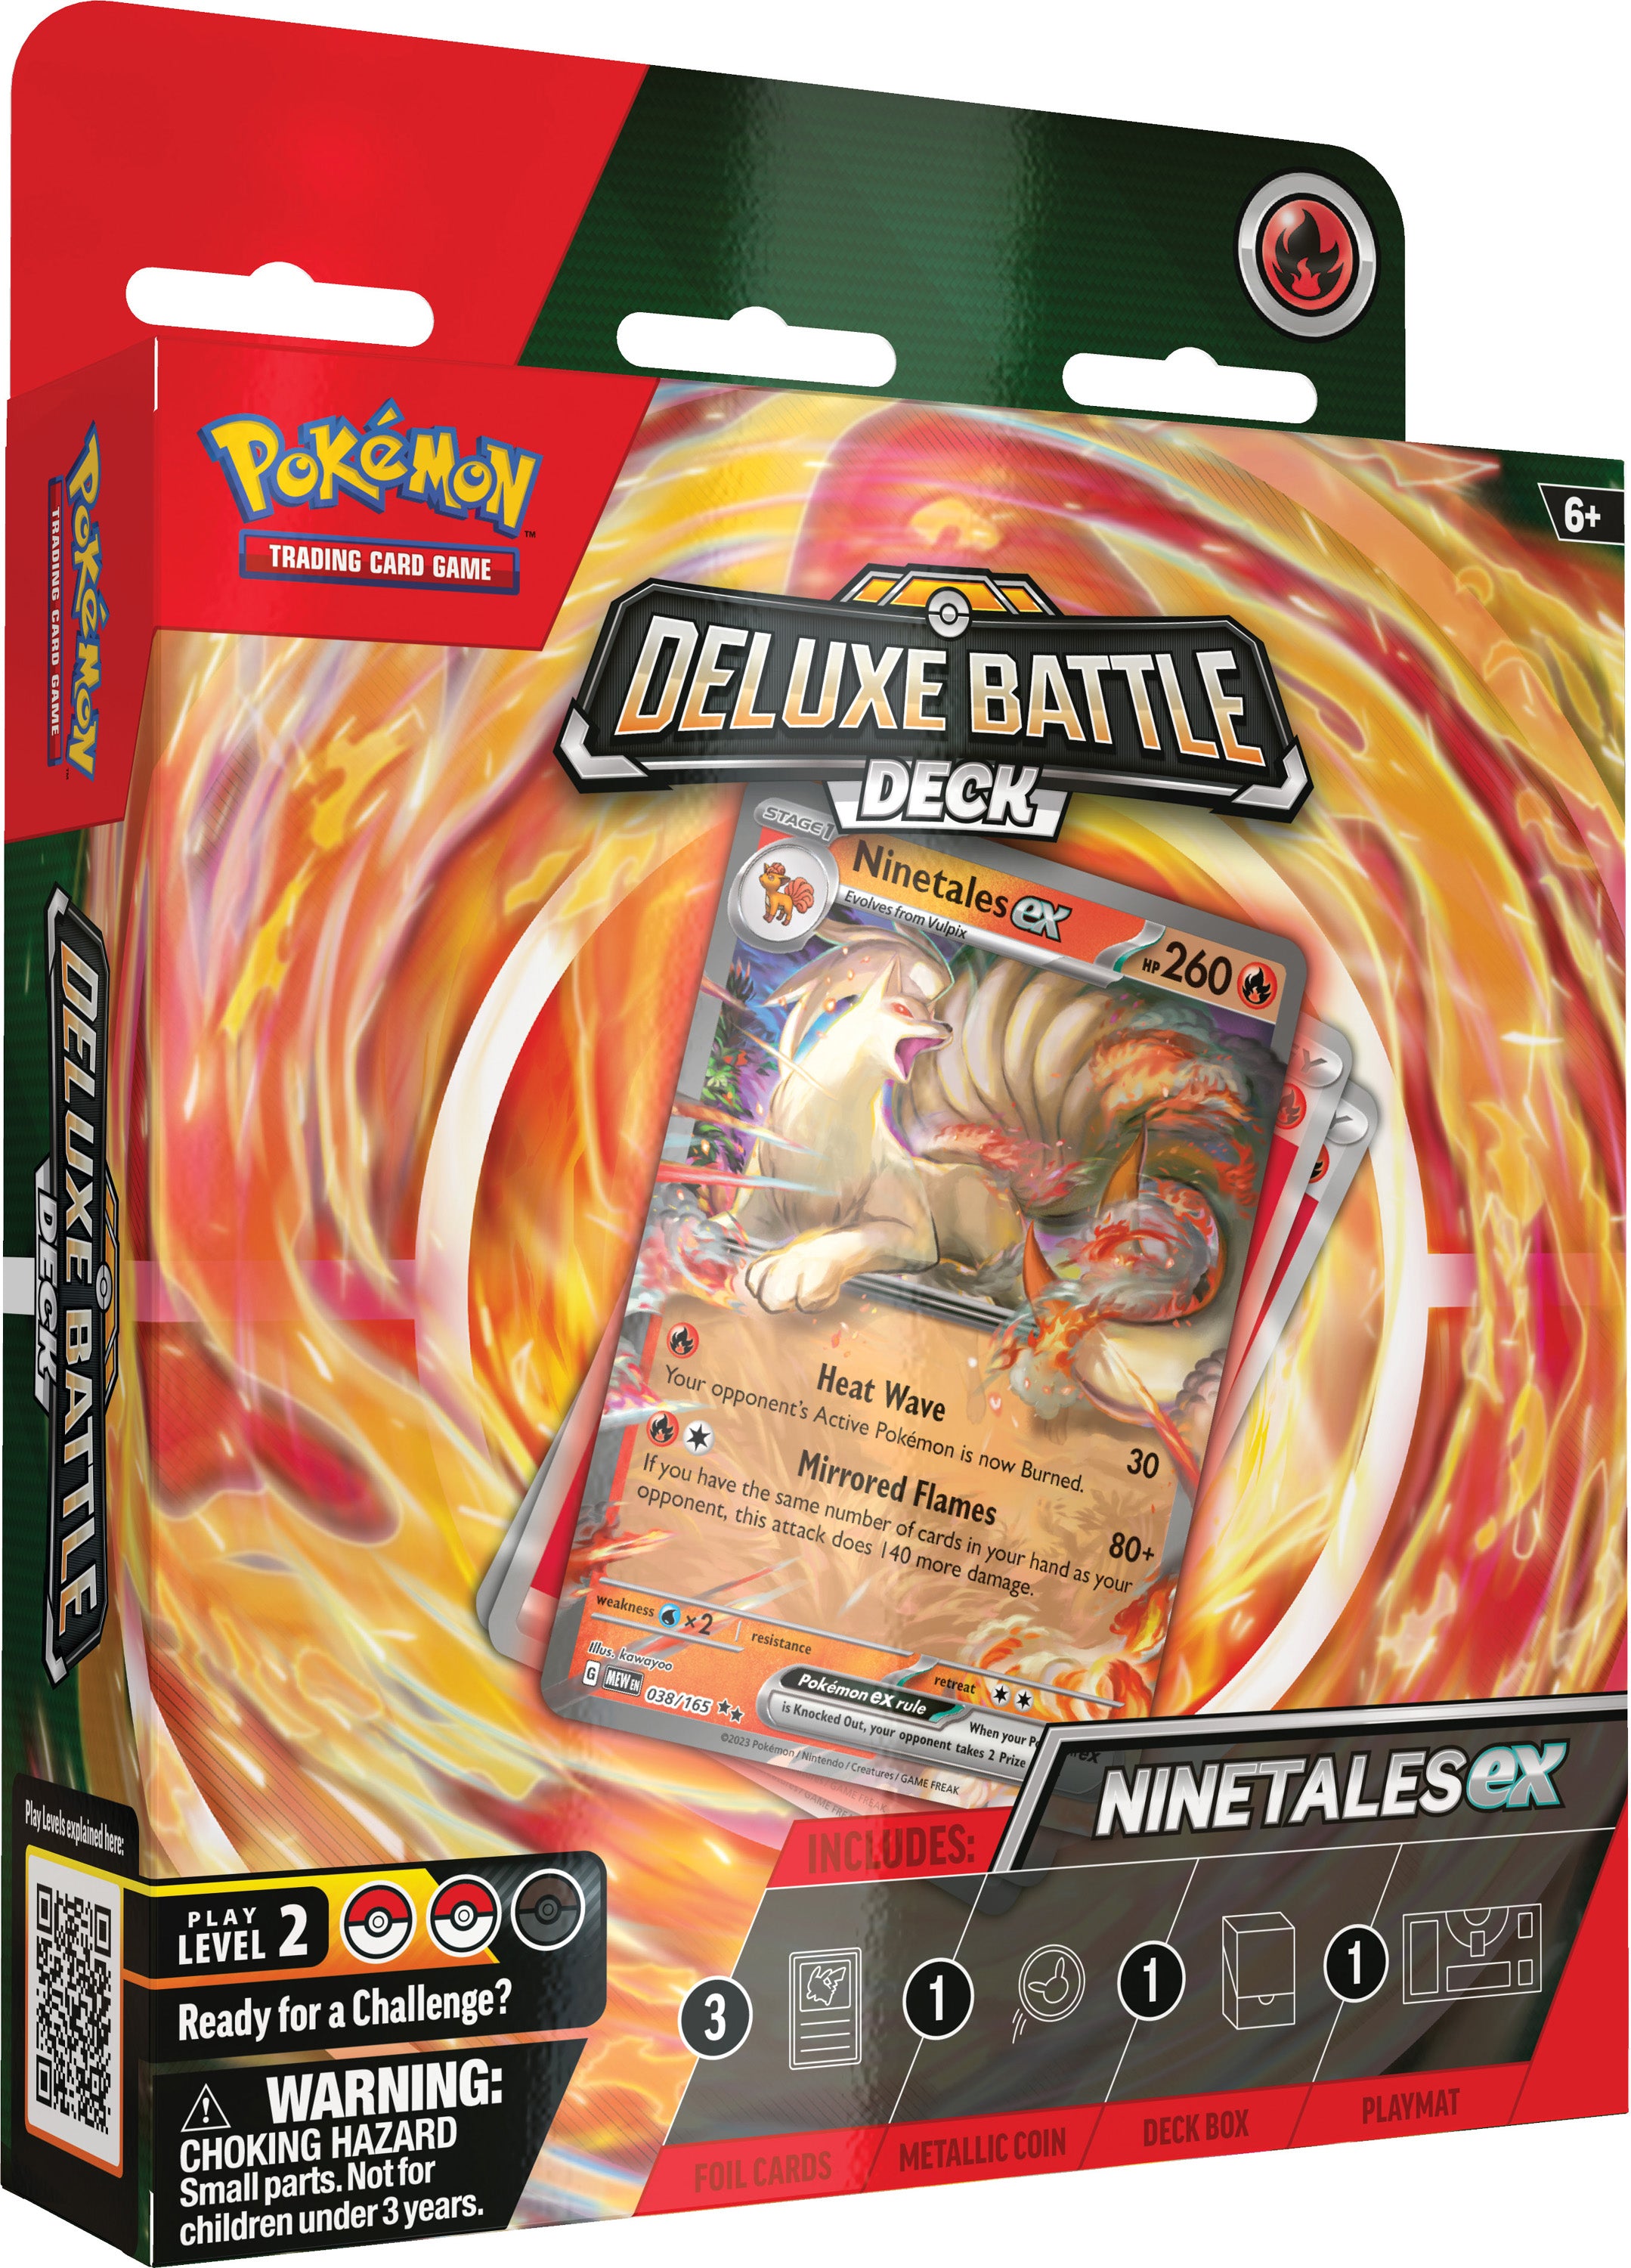 Pokemon Trading Card Game Deluxe Battle Decks Ninetales ex